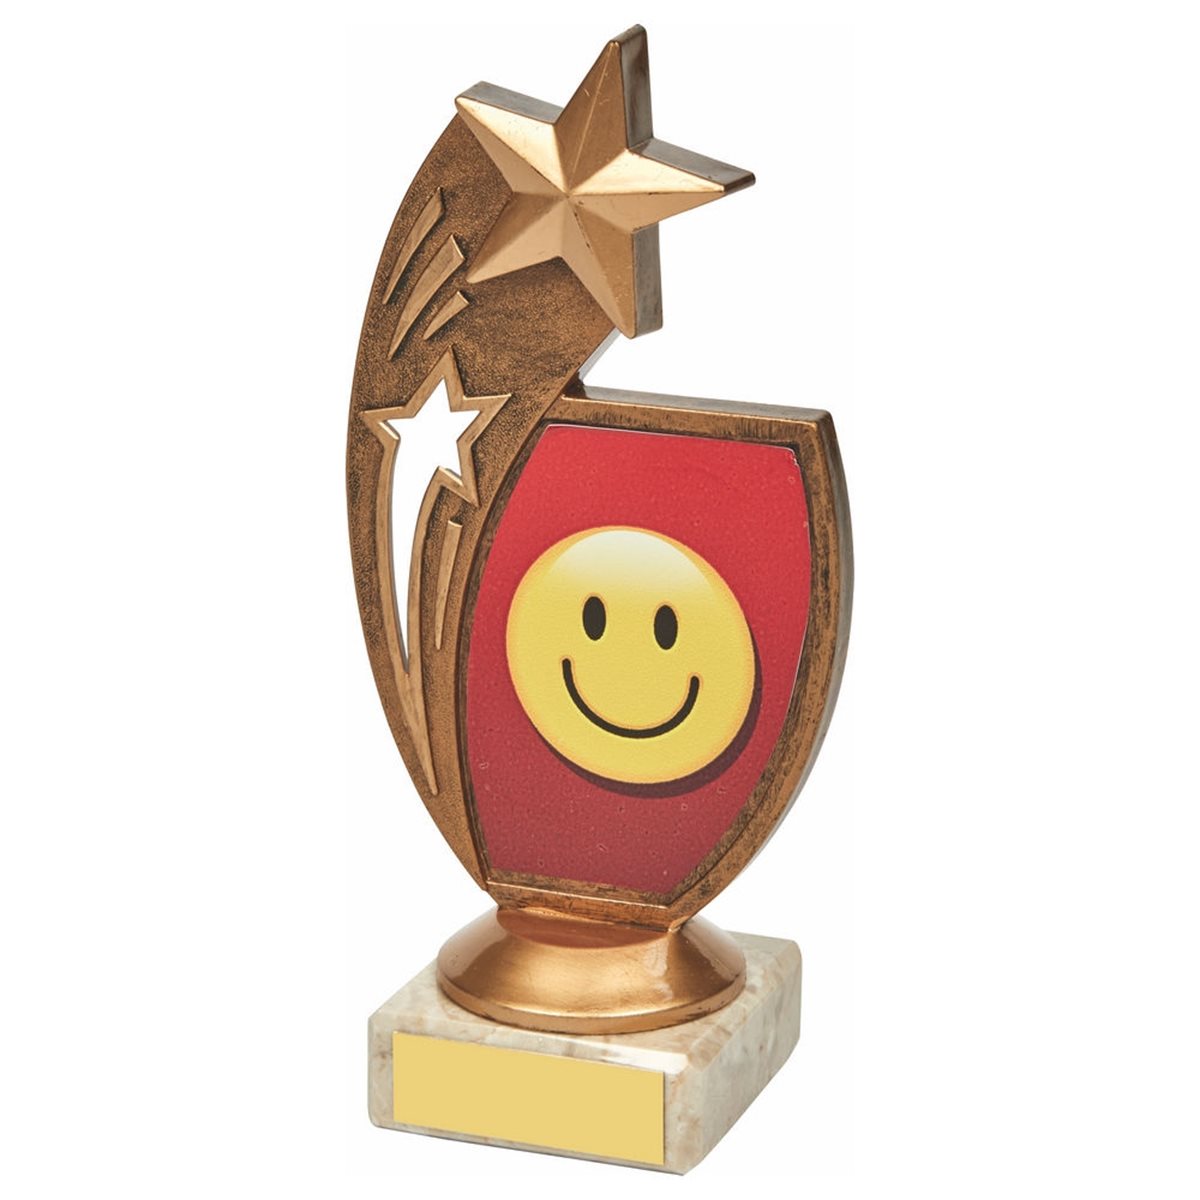 Smiley Face Star Award 1304